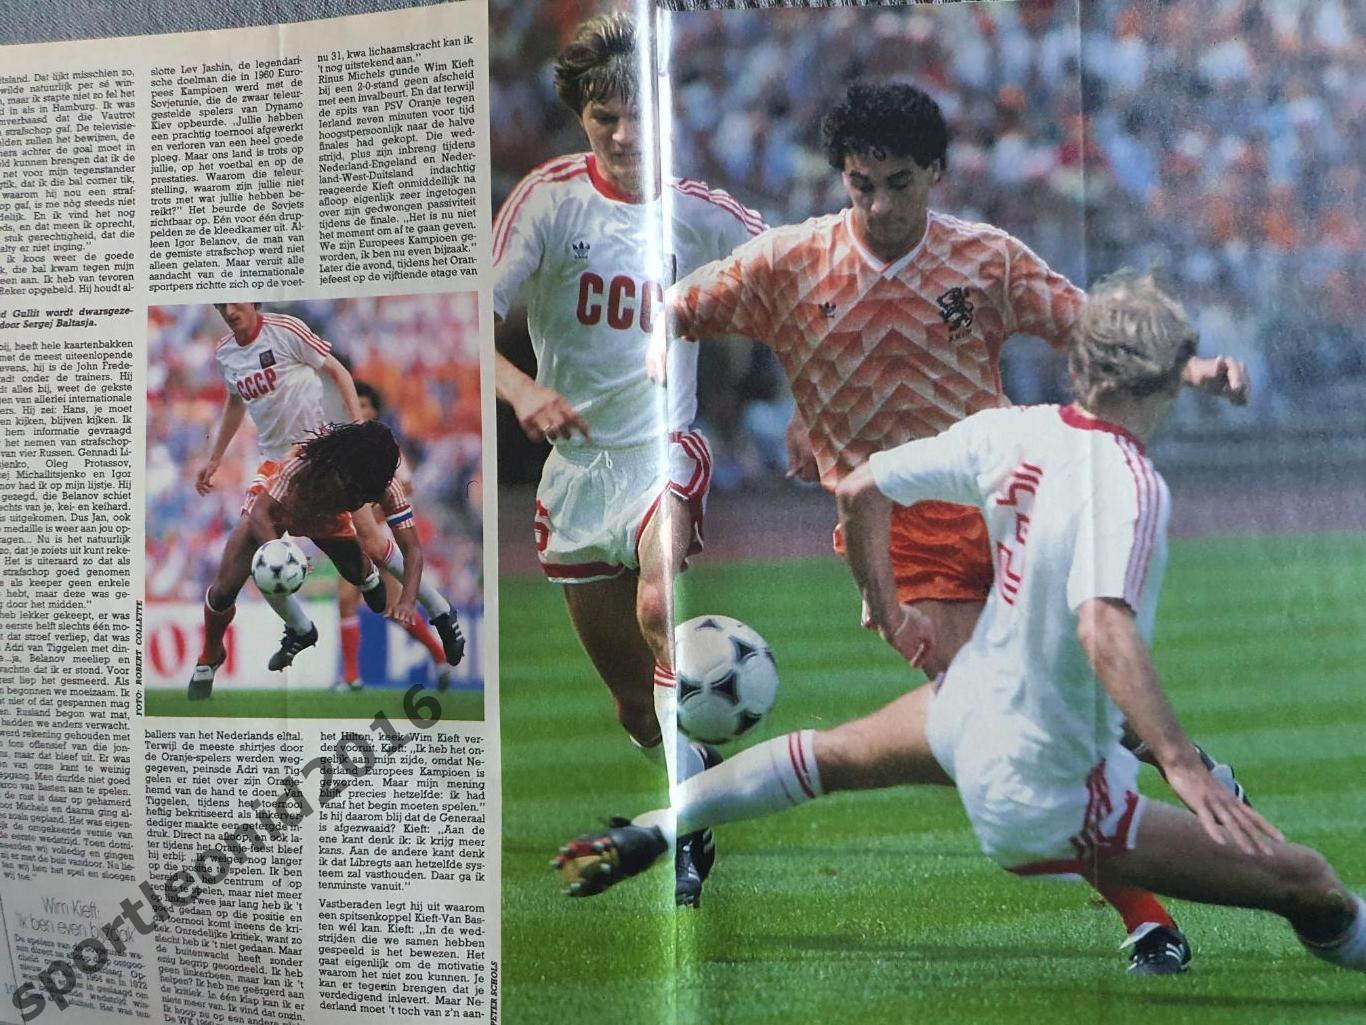 Voetbal International 1988.Годовая подписка.52 номера+4 спецвыпуска к Евро-88.10 3